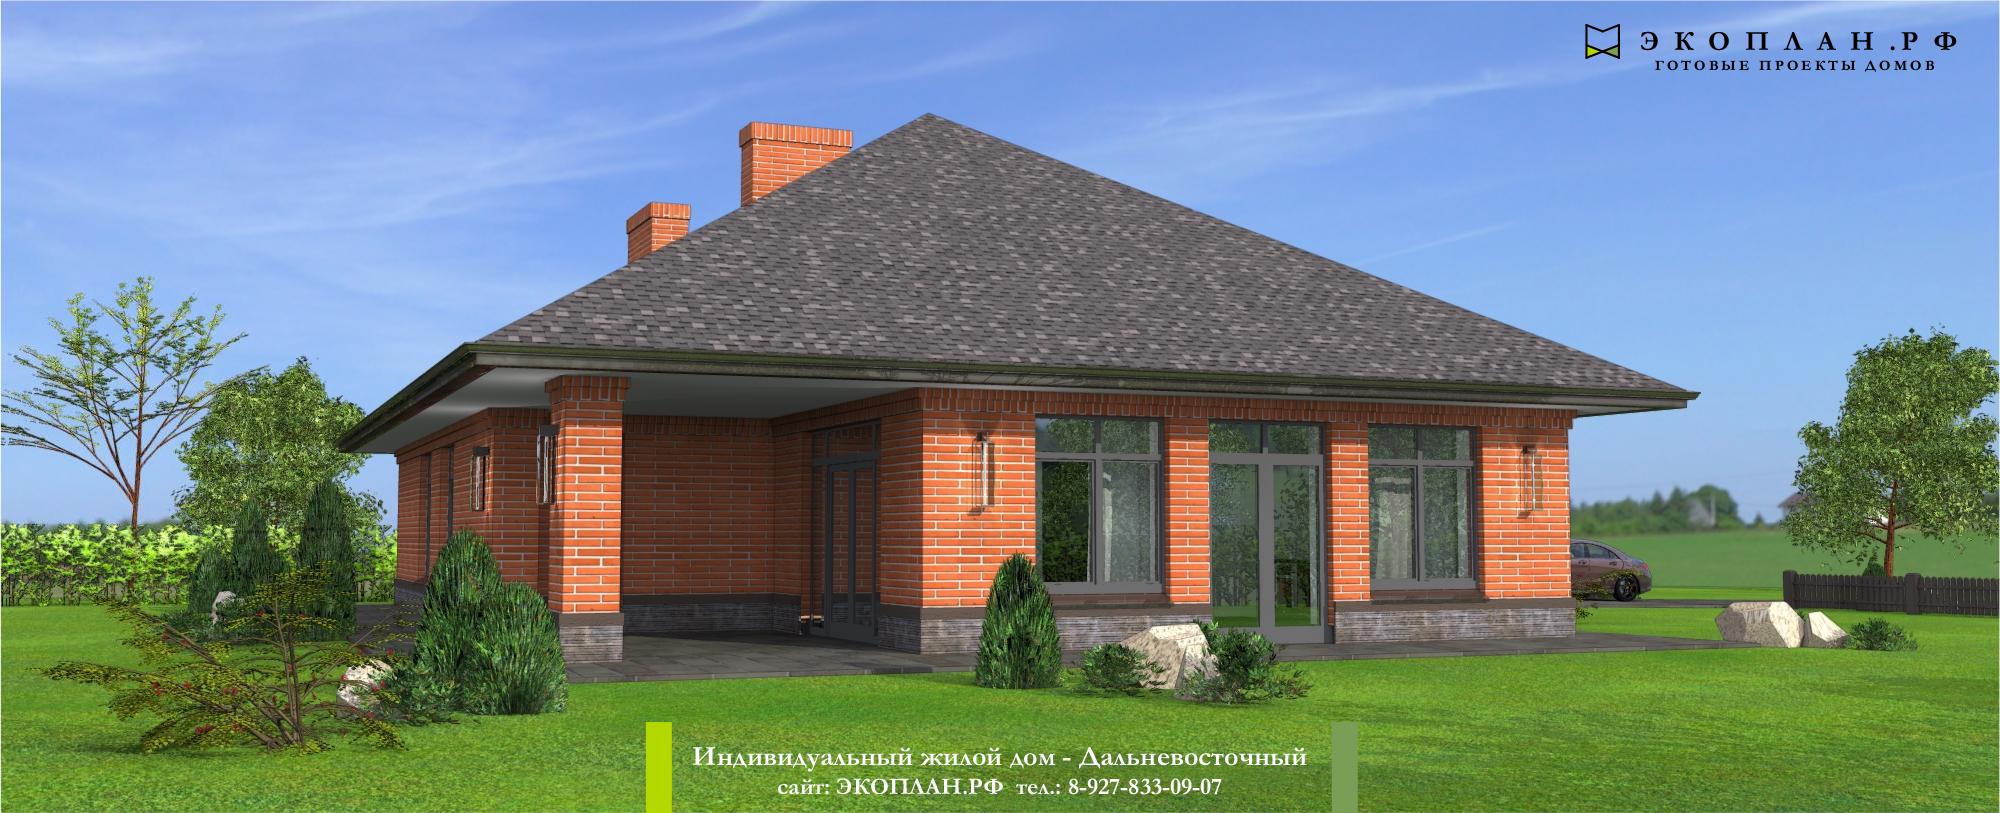 Готовый проект дома - Дальневосточный - Ульяновск фасад